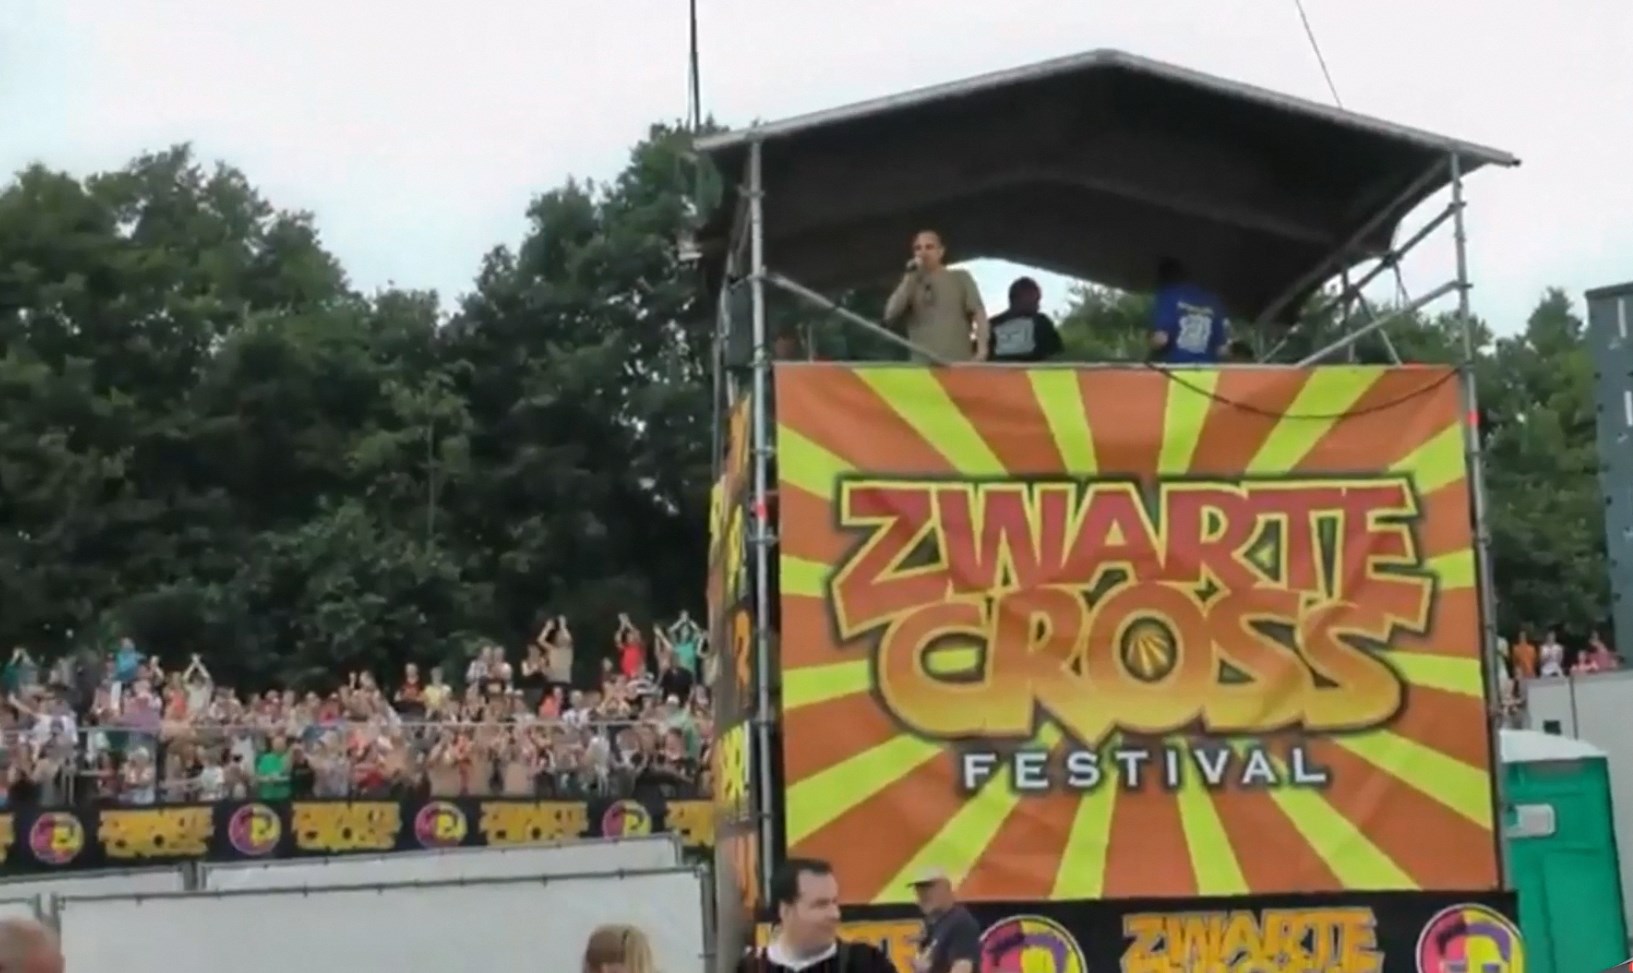 Zwarte Cross festival - Naked run 2